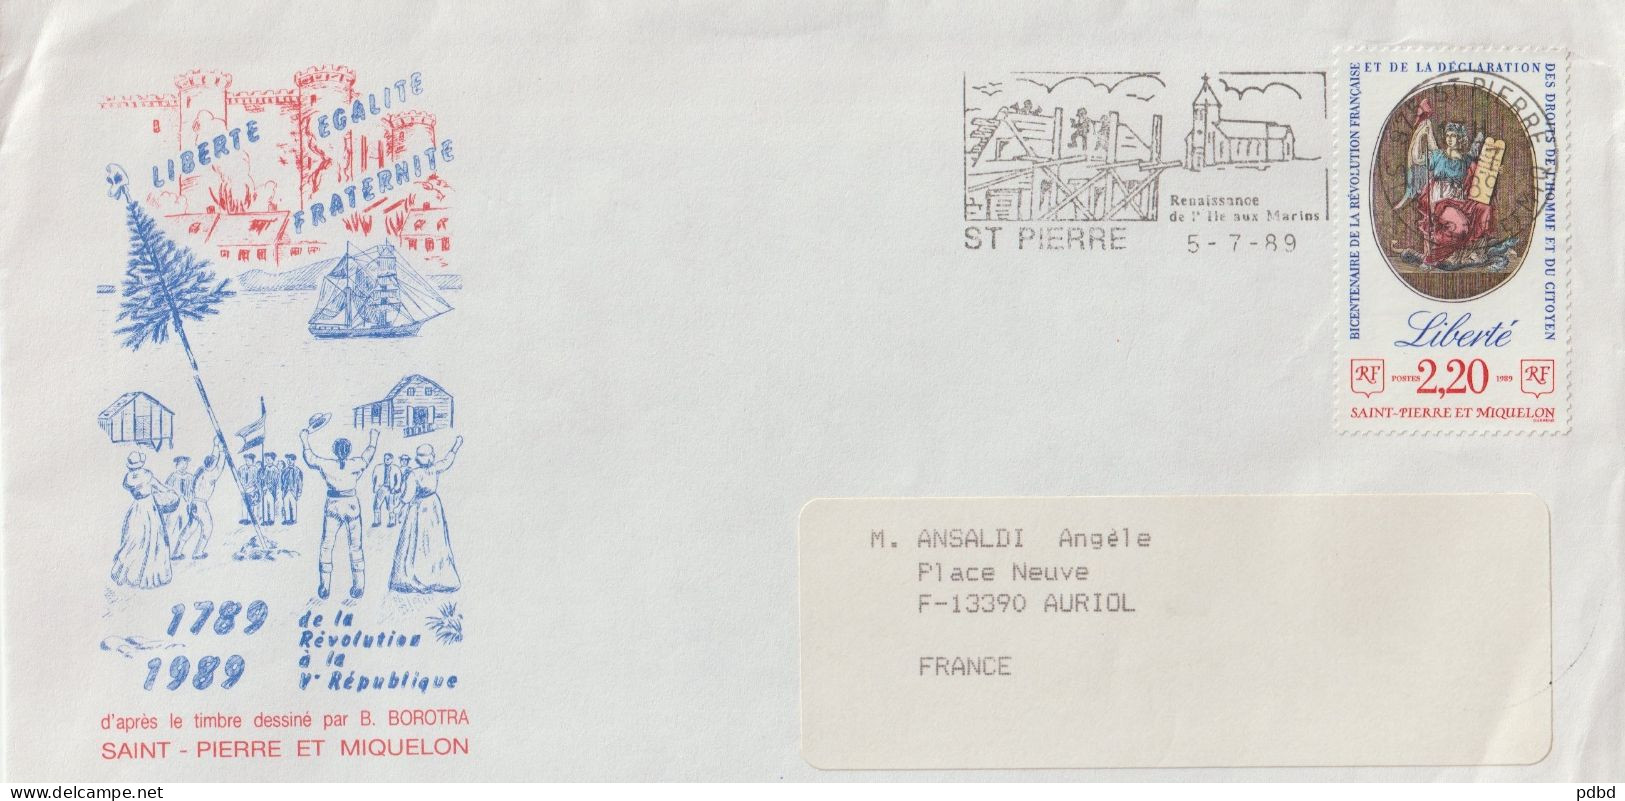 FT 74 . Saint Pierre et Miquelon . Affranchissements et oblitérations . 32 documents (encarts, enveloppes)